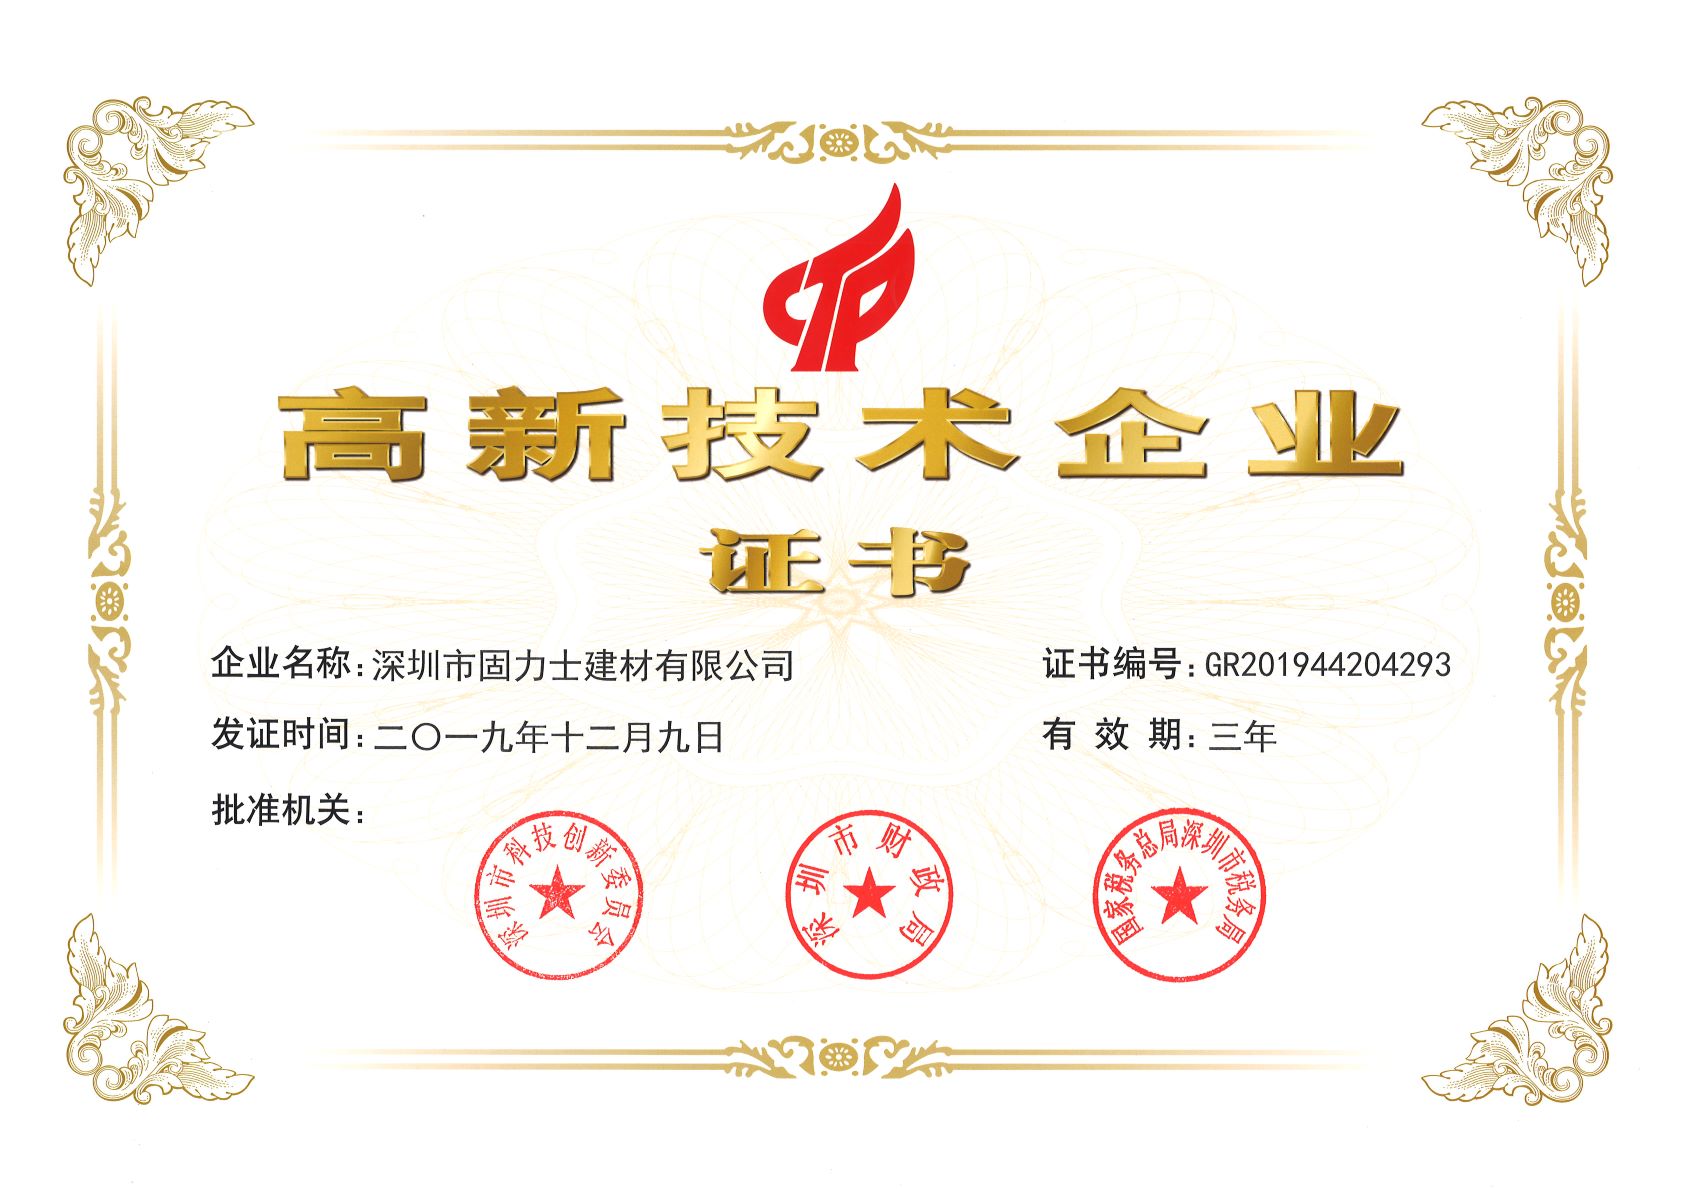 和硕热烈祝贺深圳市固力士建材有限公司通过高新技术企业认证